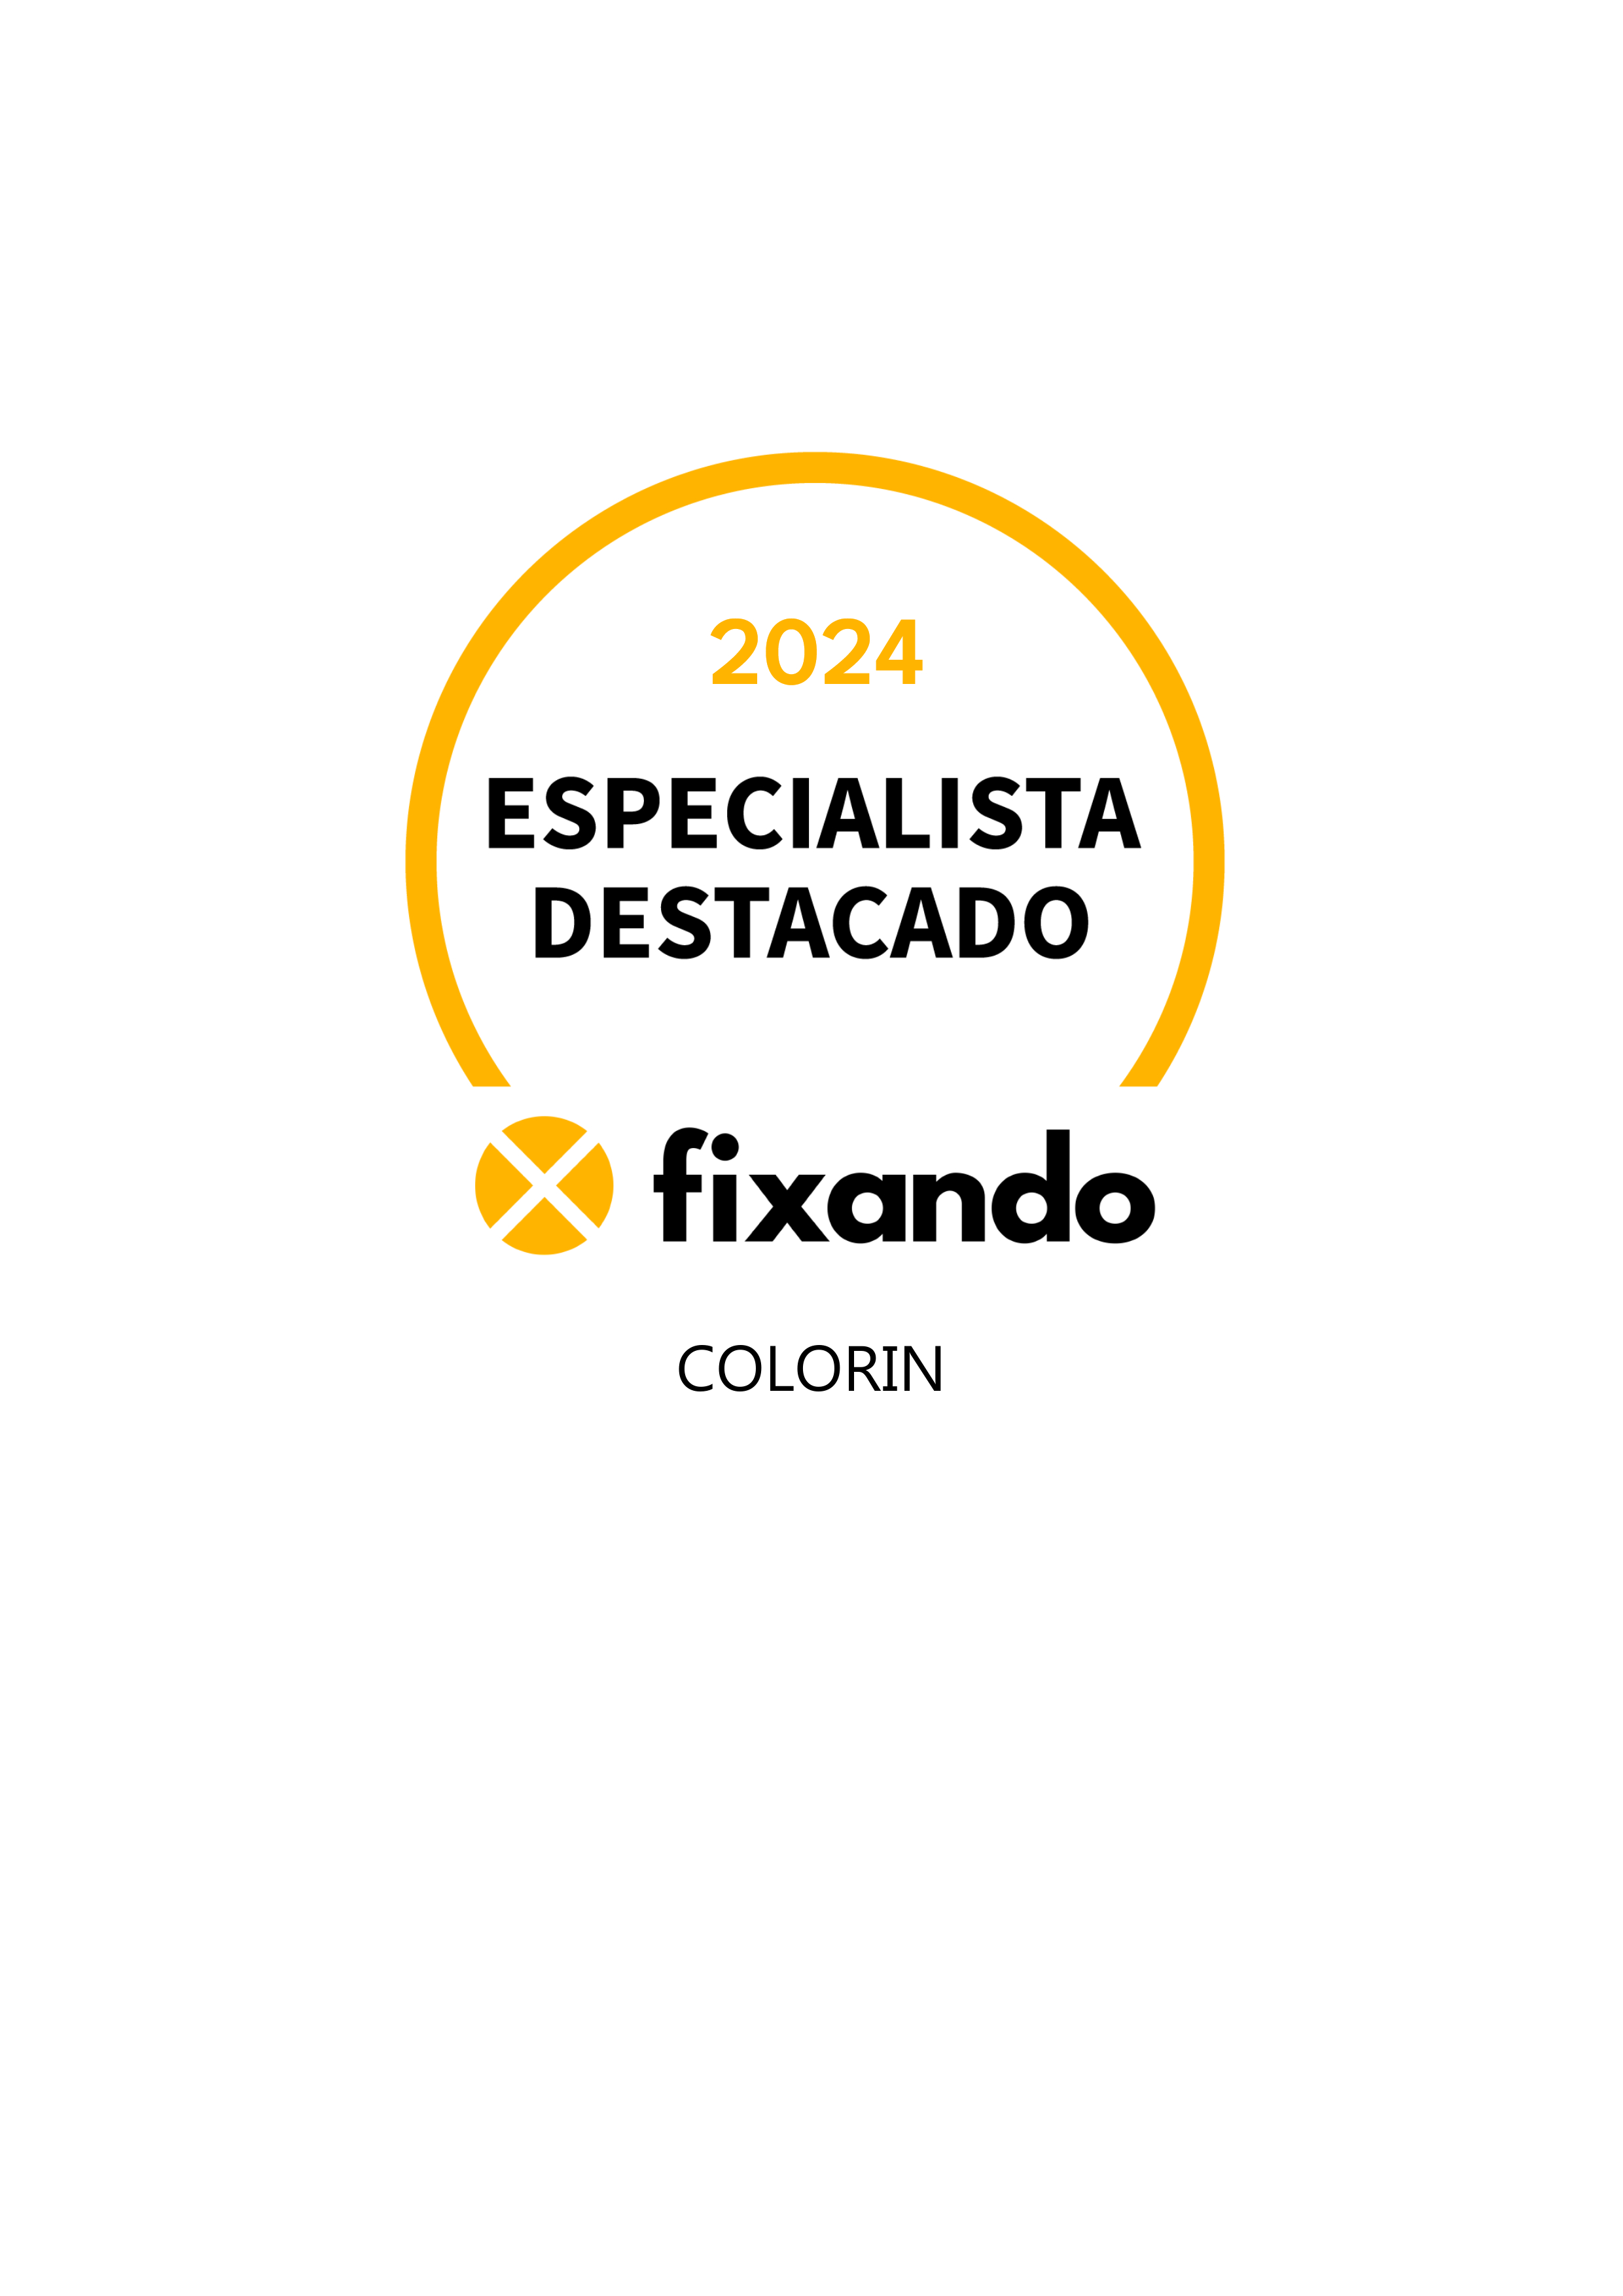 ColorIn - Santo Tirso - Design de Logotipos